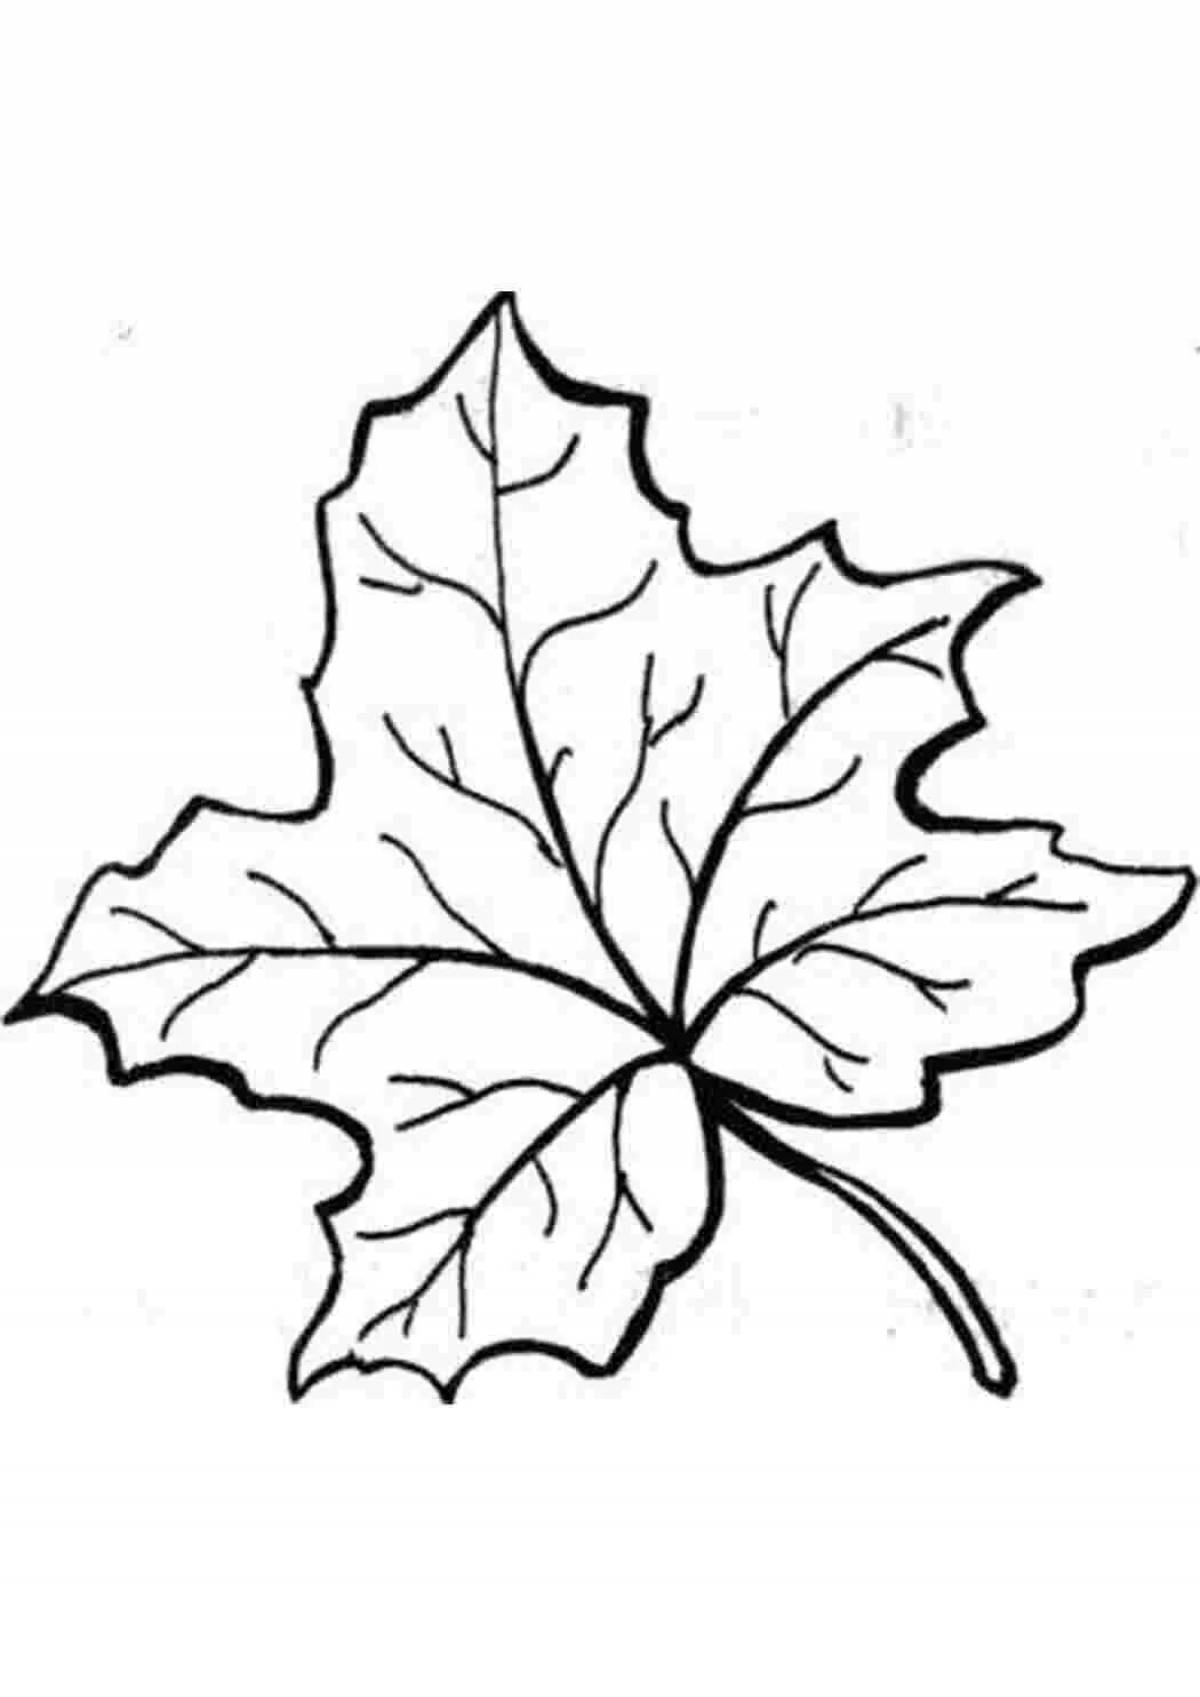 Maple leaf #19